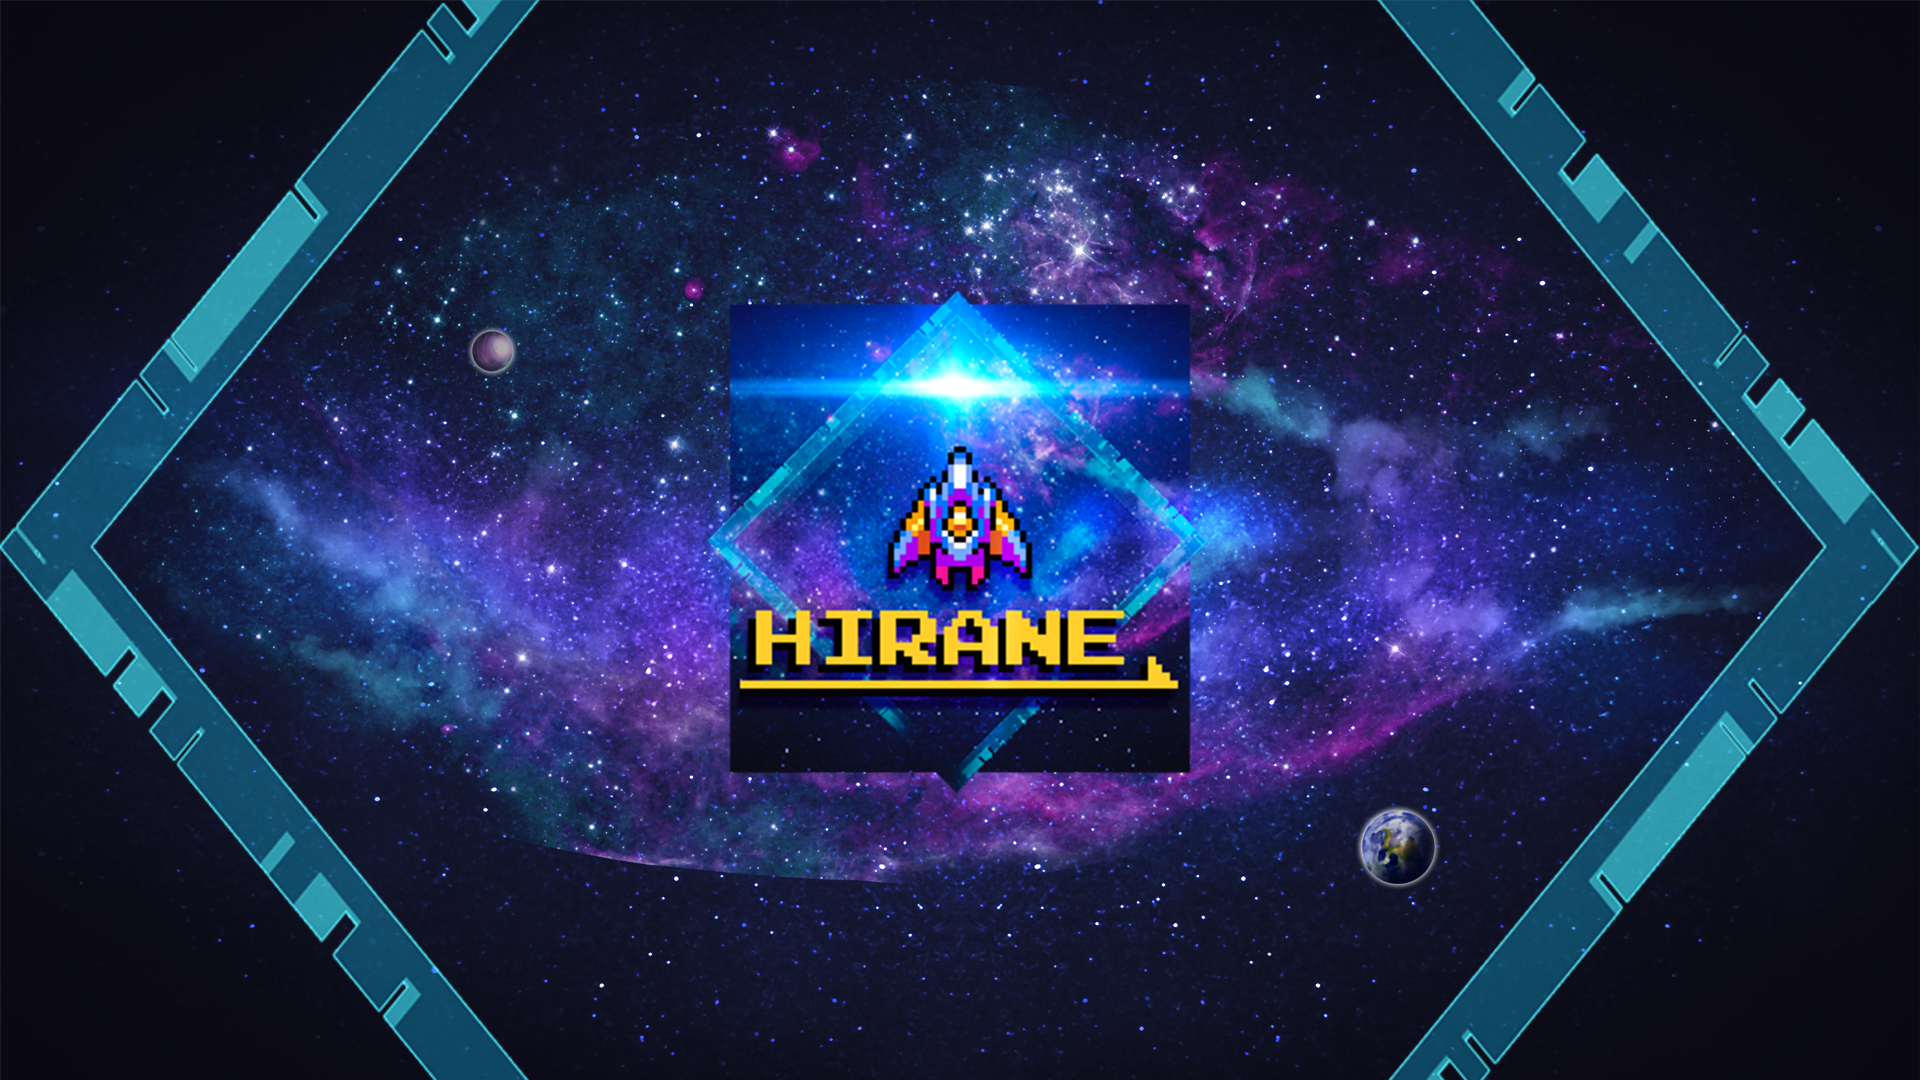 Icon for Hirane!